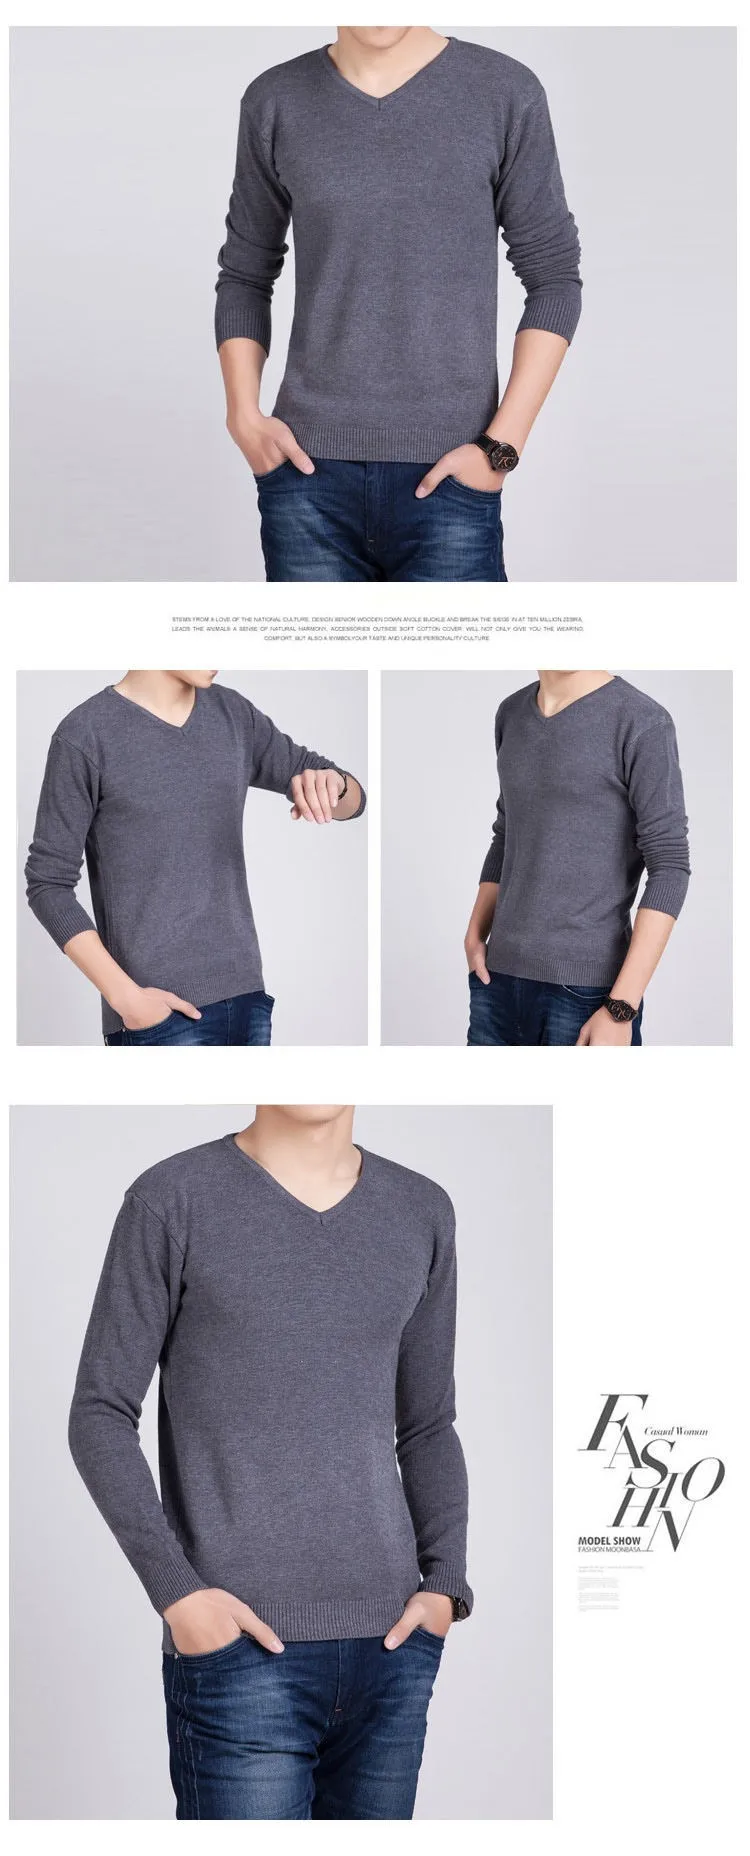 HS однотонный пуловер для мужчин, шерстяной и кашемировый свитер для мужчин, известный бренд, мужские свитера с v-образным вырезом, модные мужские облегающие рубашки